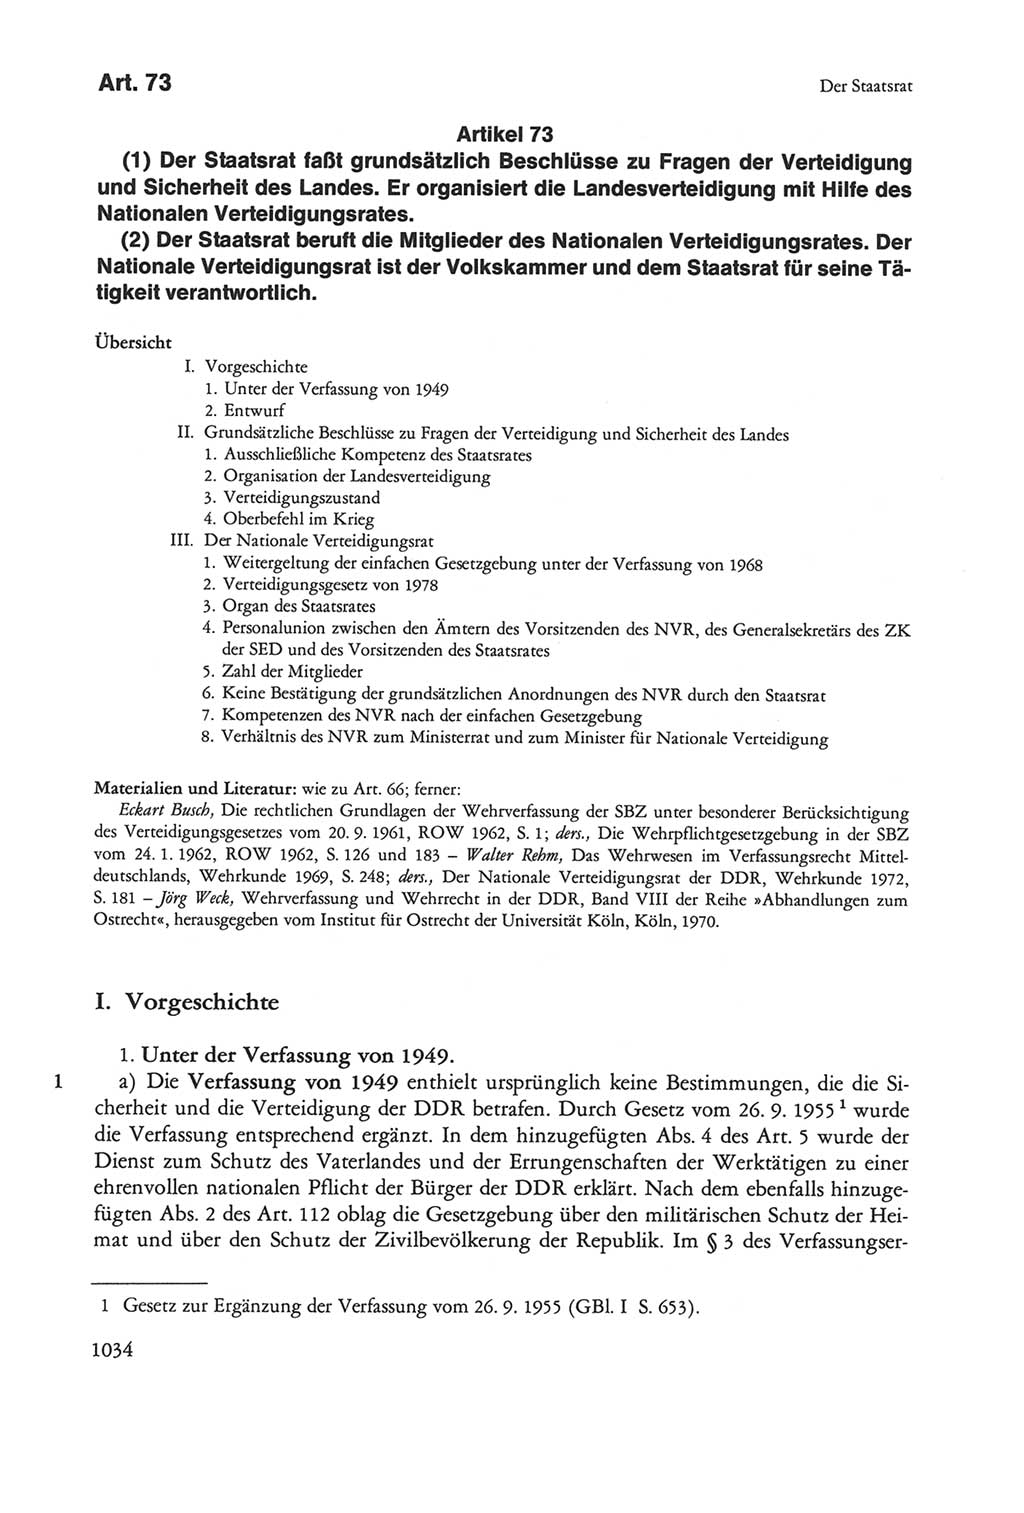 Die sozialistische Verfassung der Deutschen Demokratischen Republik (DDR), Kommentar mit einem Nachtrag 1997, Seite 1034 (Soz. Verf. DDR Komm. Nachtr. 1997, S. 1034)